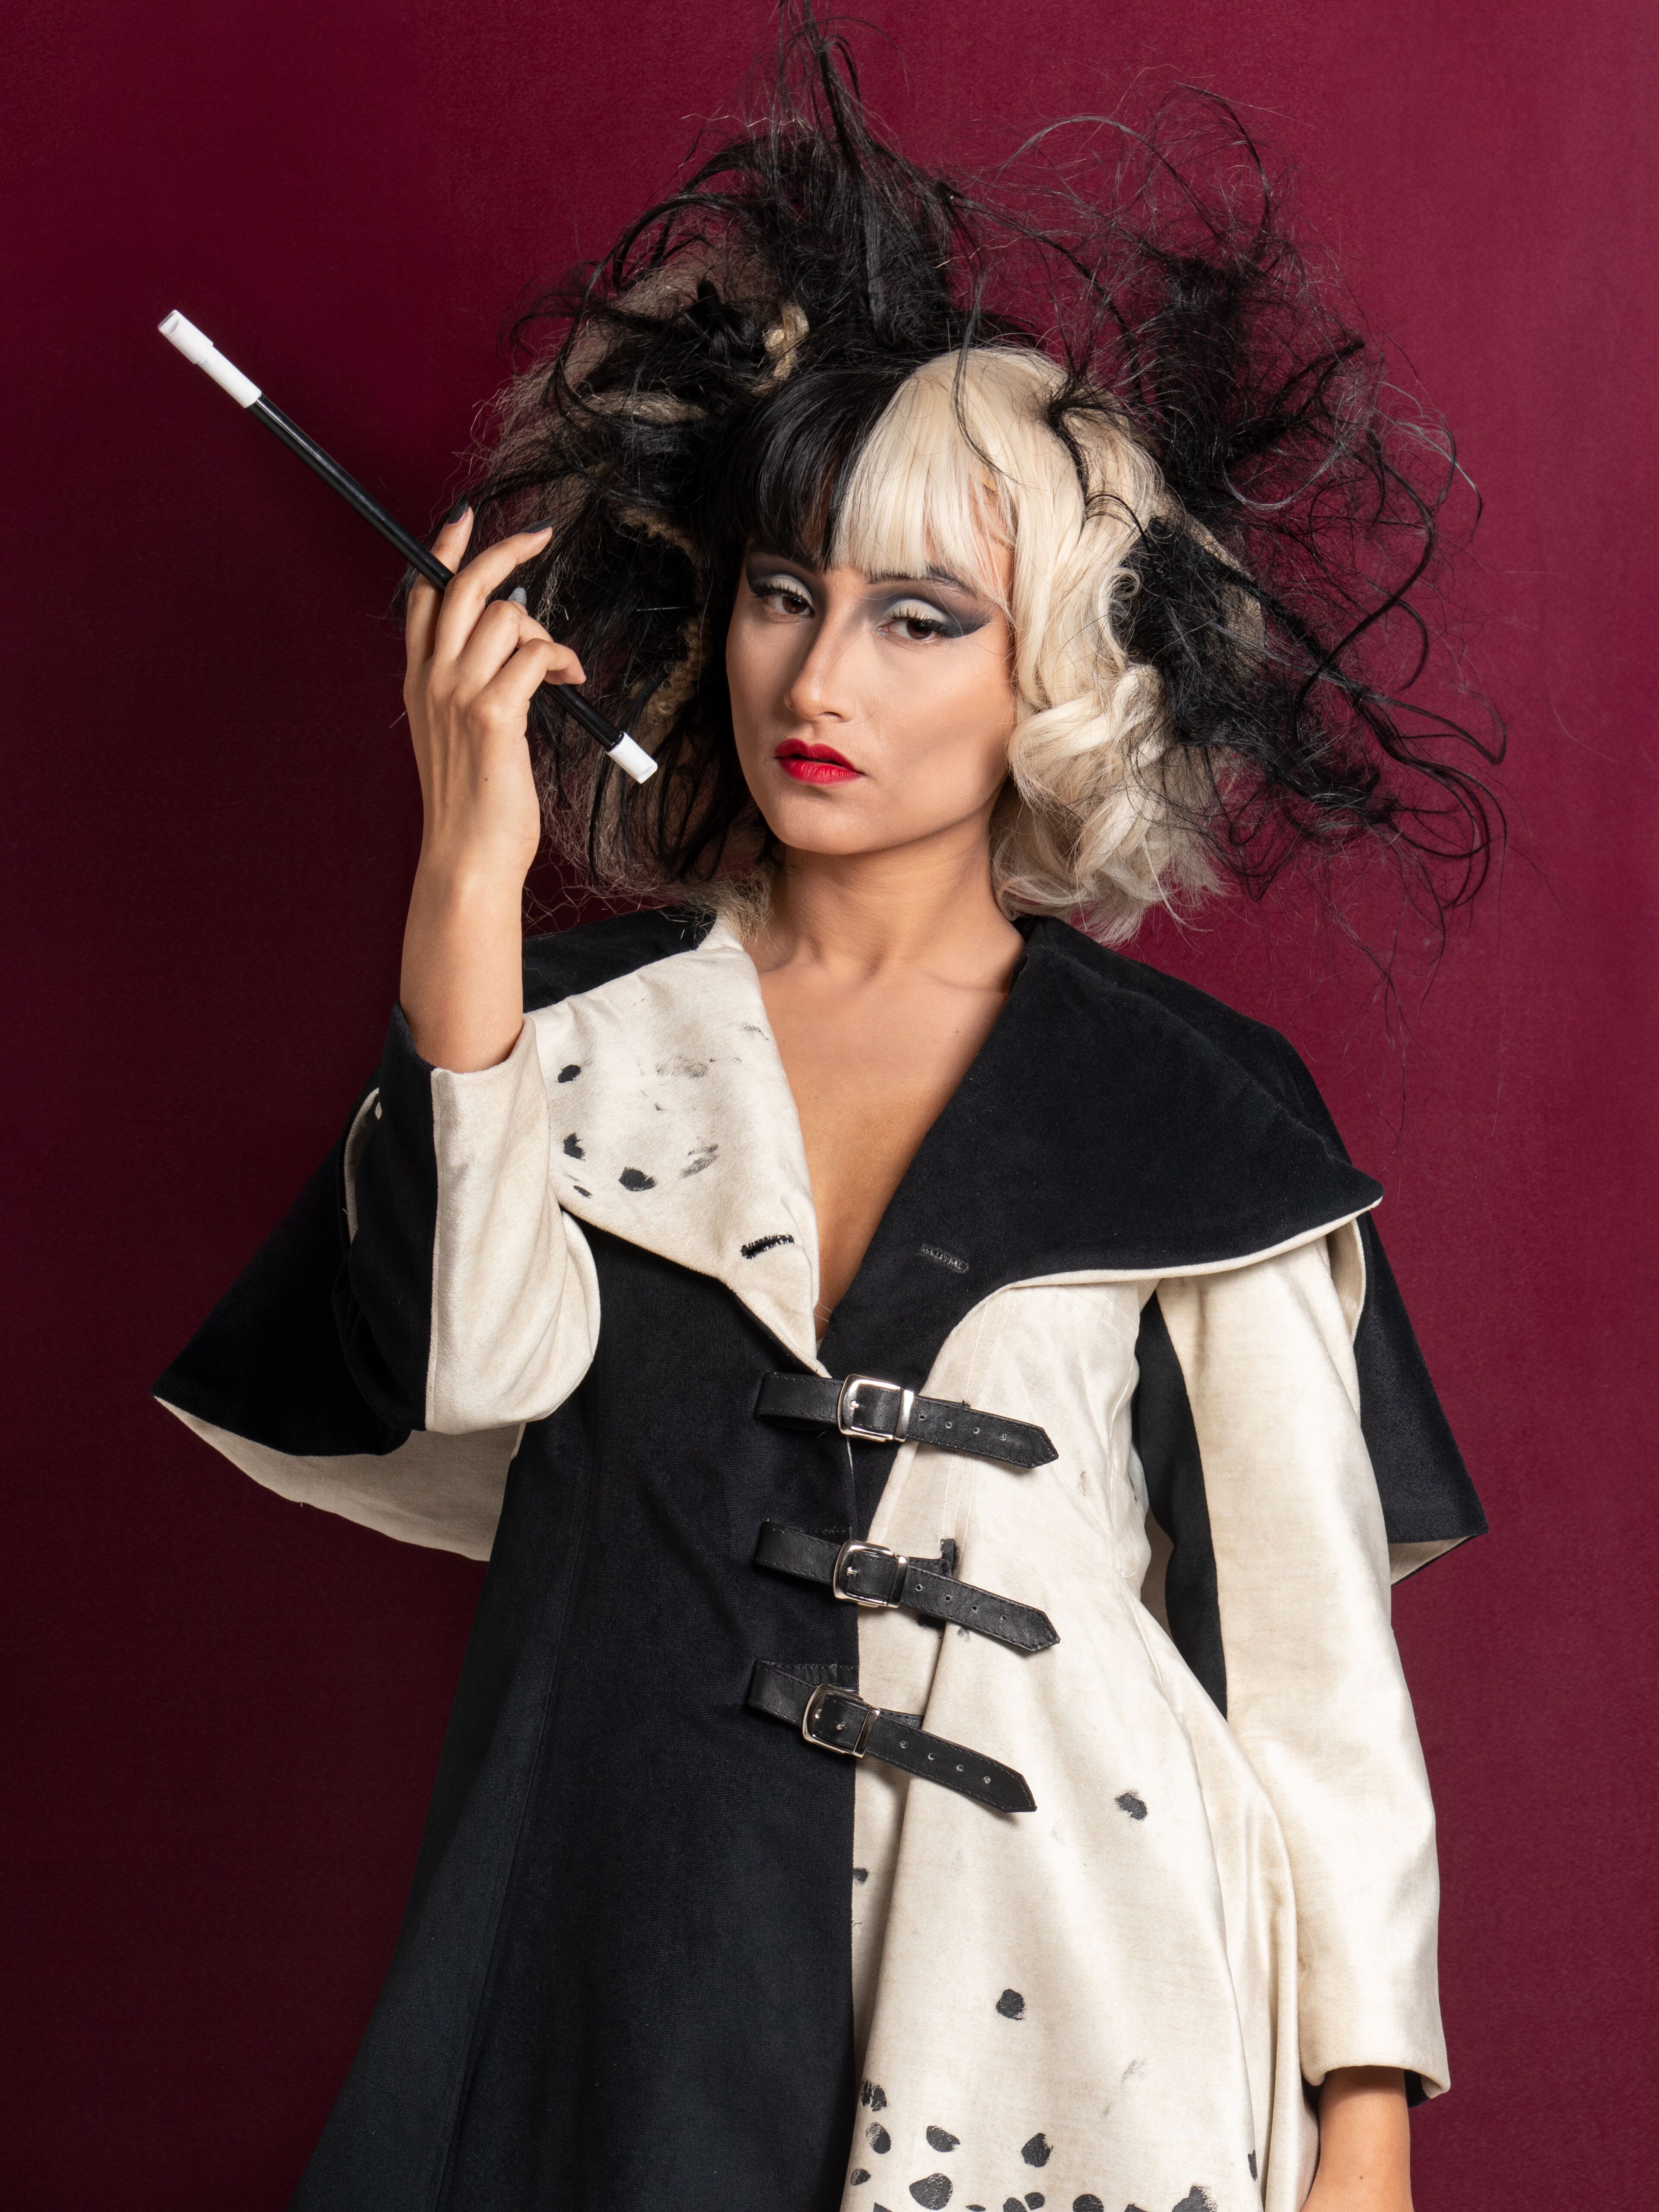 Persona posando dramáticamente, evocando la icónica apariencia de Cruella de Vil con un peinado en dos tonos, maquillaje intenso y abrigo moteado.